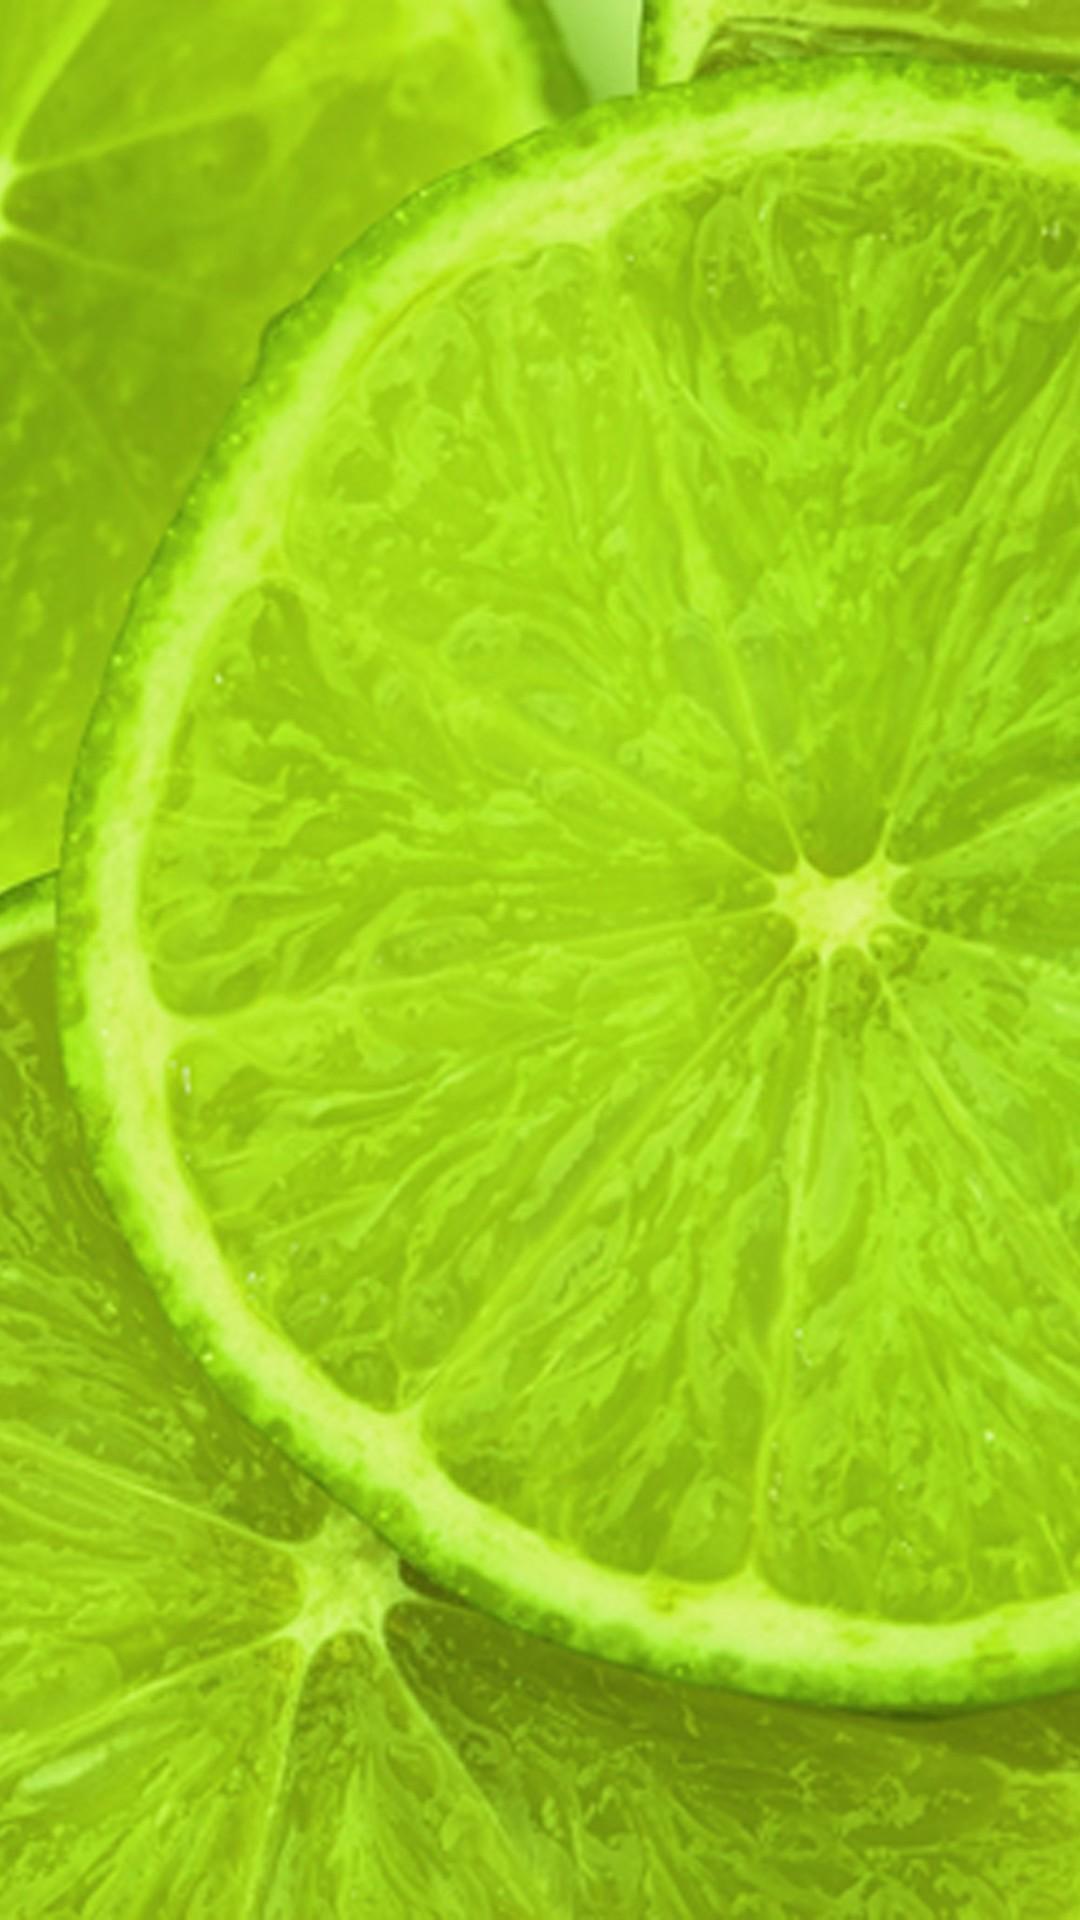 柠檬 绿色 水果 - Pixabay上的免费照片 - Pixabay